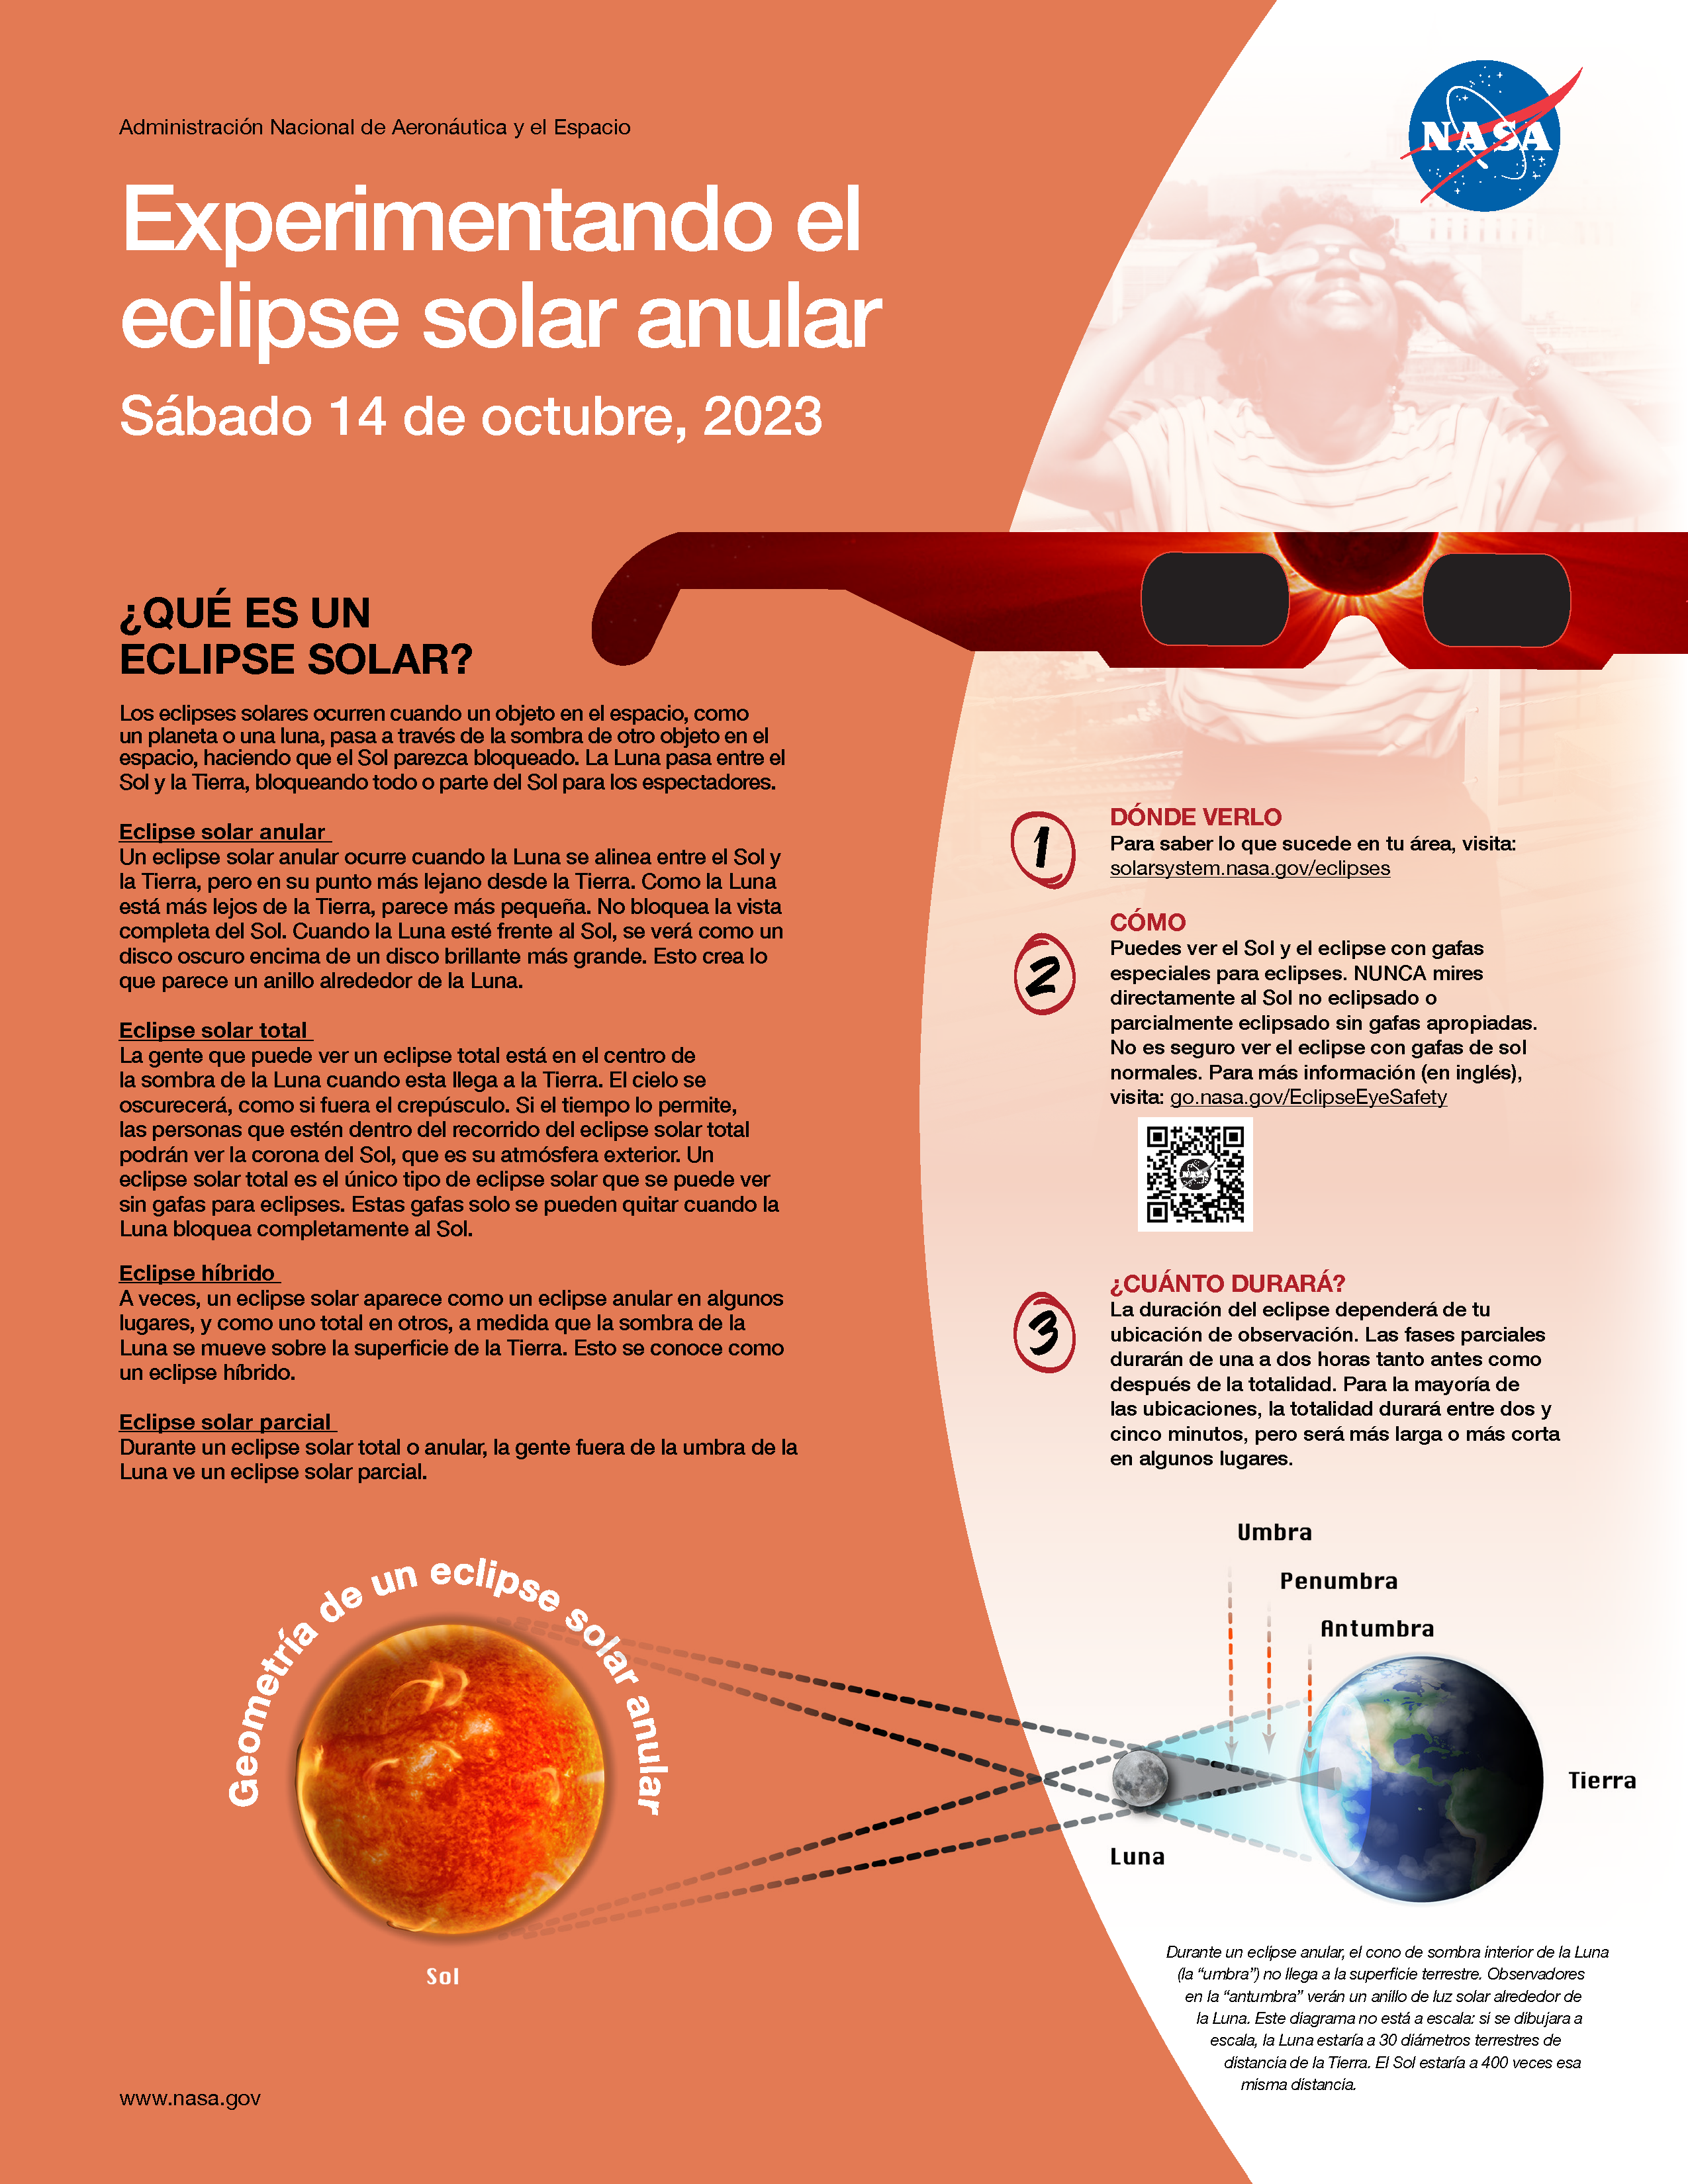 Información sobre el eclipse anular del 14 de octubre de 2023 NASA